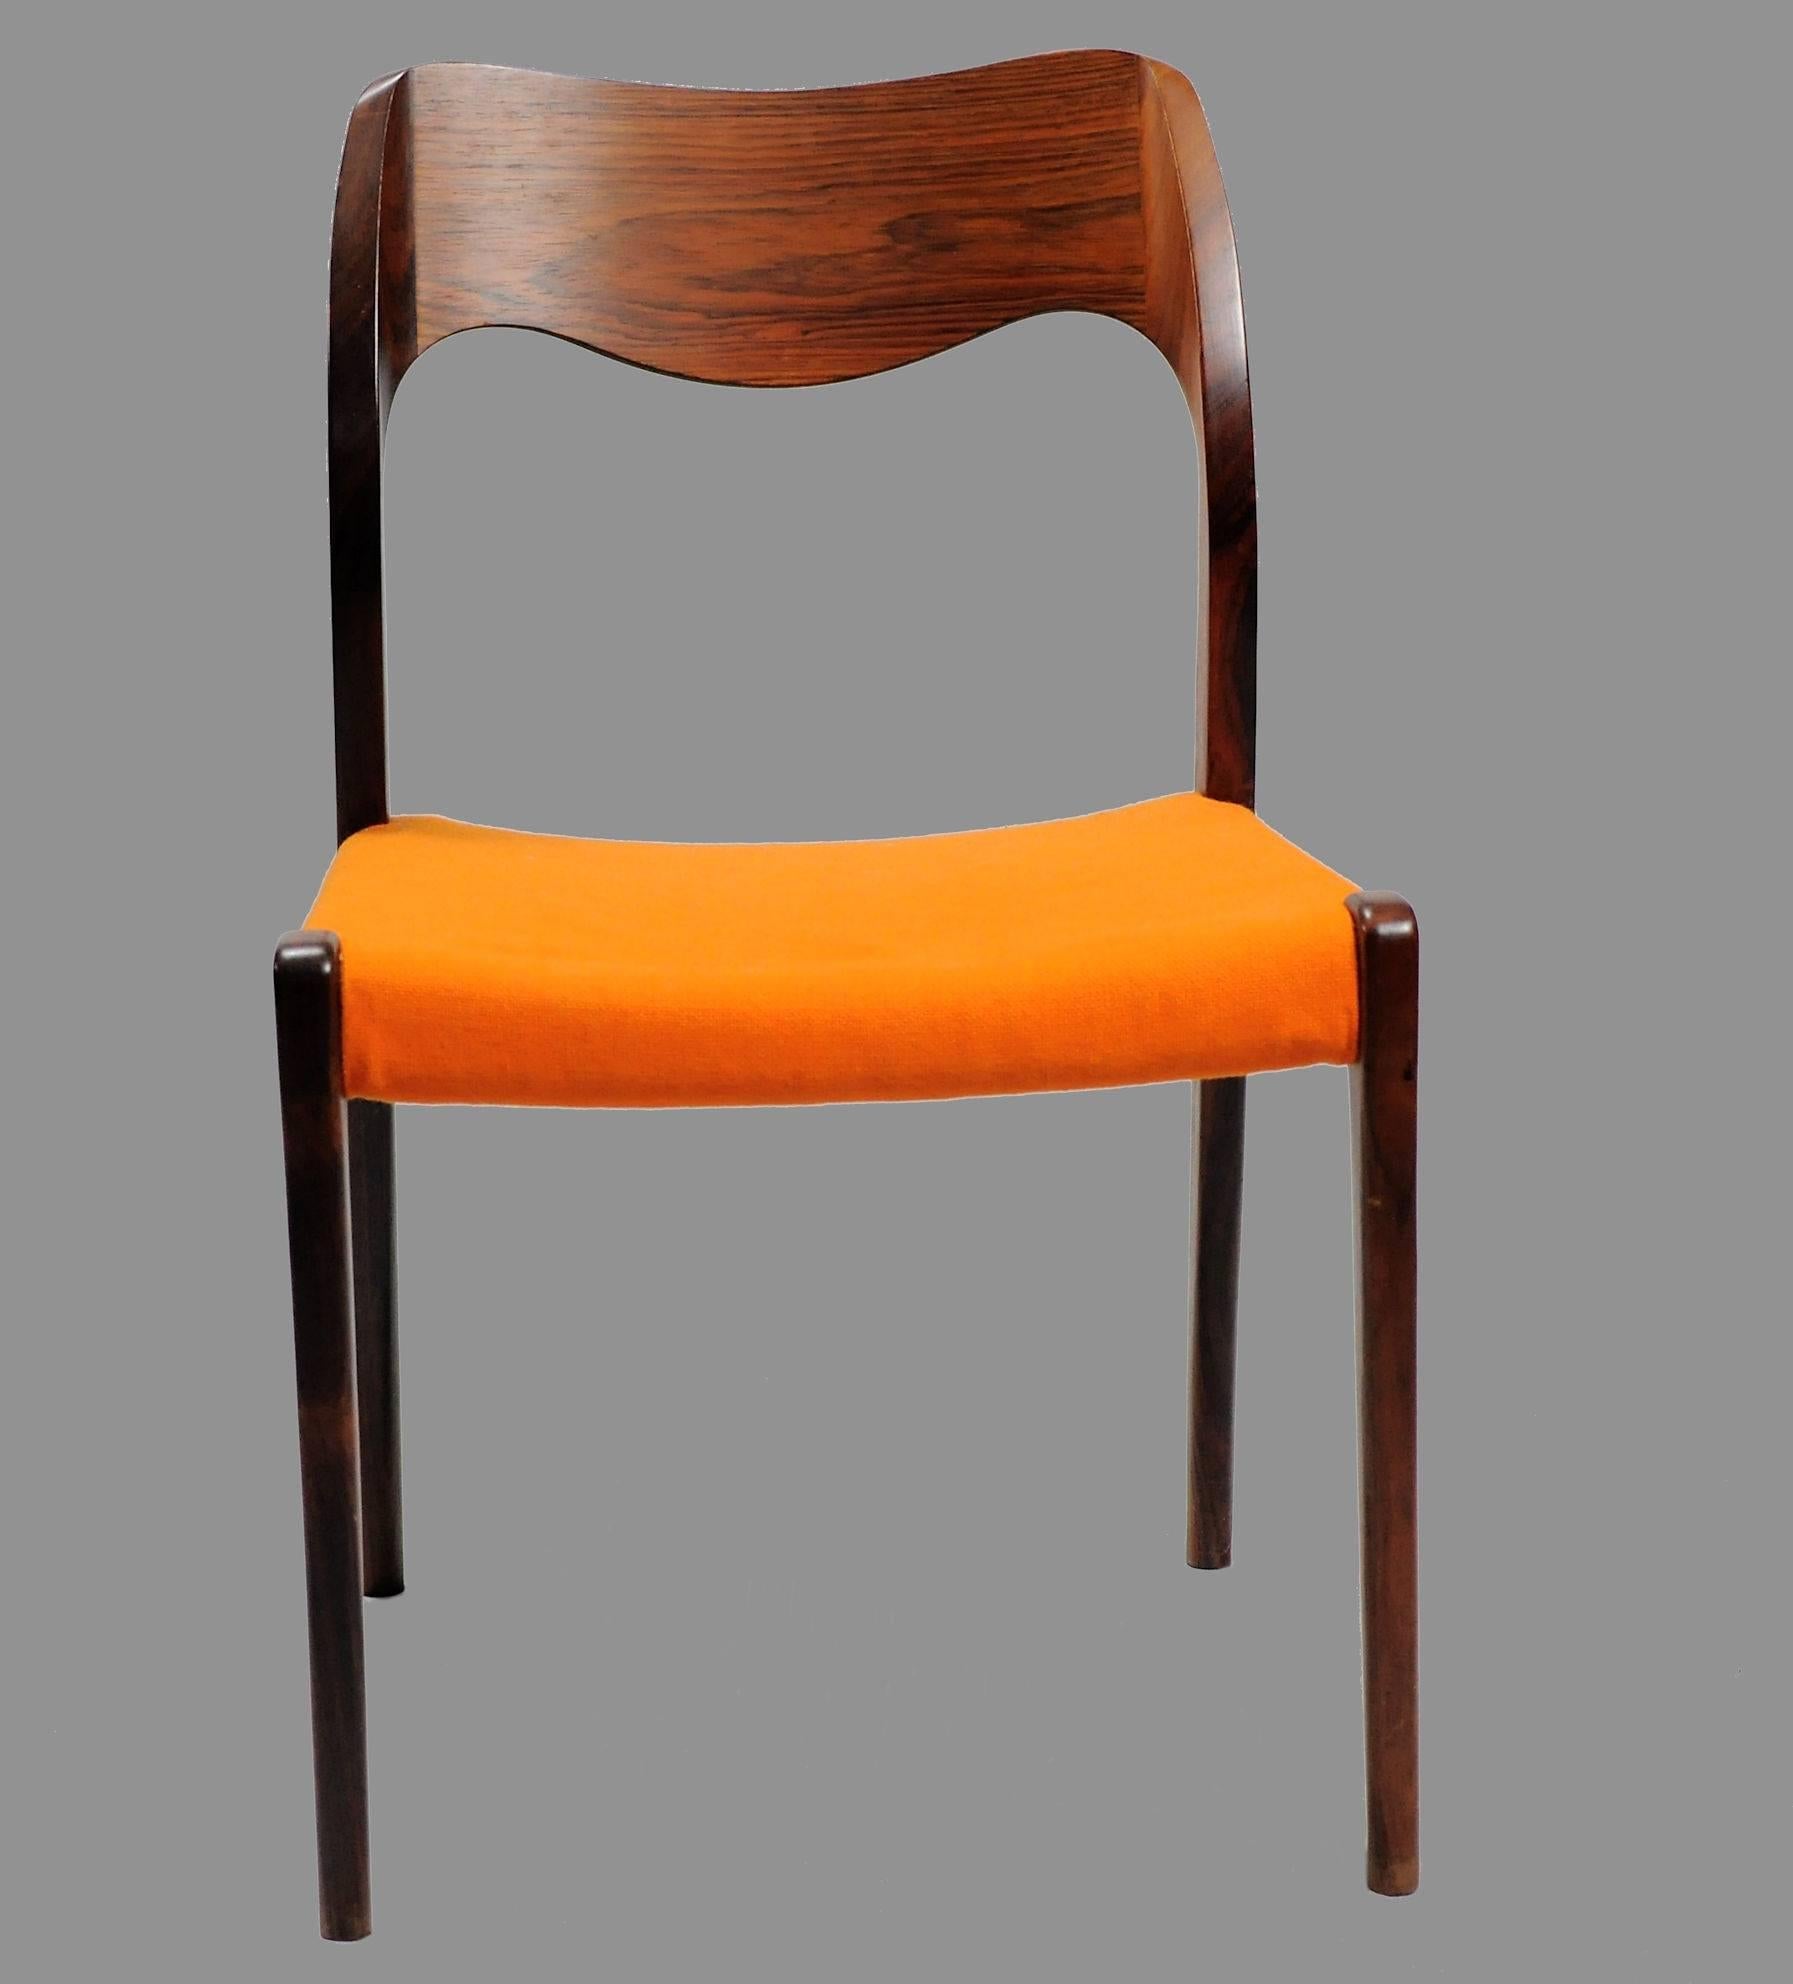 Satz von 12 Esszimmerstühlen Modell 71 aus Palisanderholz, entworfen von Niels Otto Møller im Jahr 1951.

Die Stühle haben einen massiven Rahmen und eine Rückenlehne aus Palisanderholz mit geraden Beinen und einer eleganten, organisch geformten